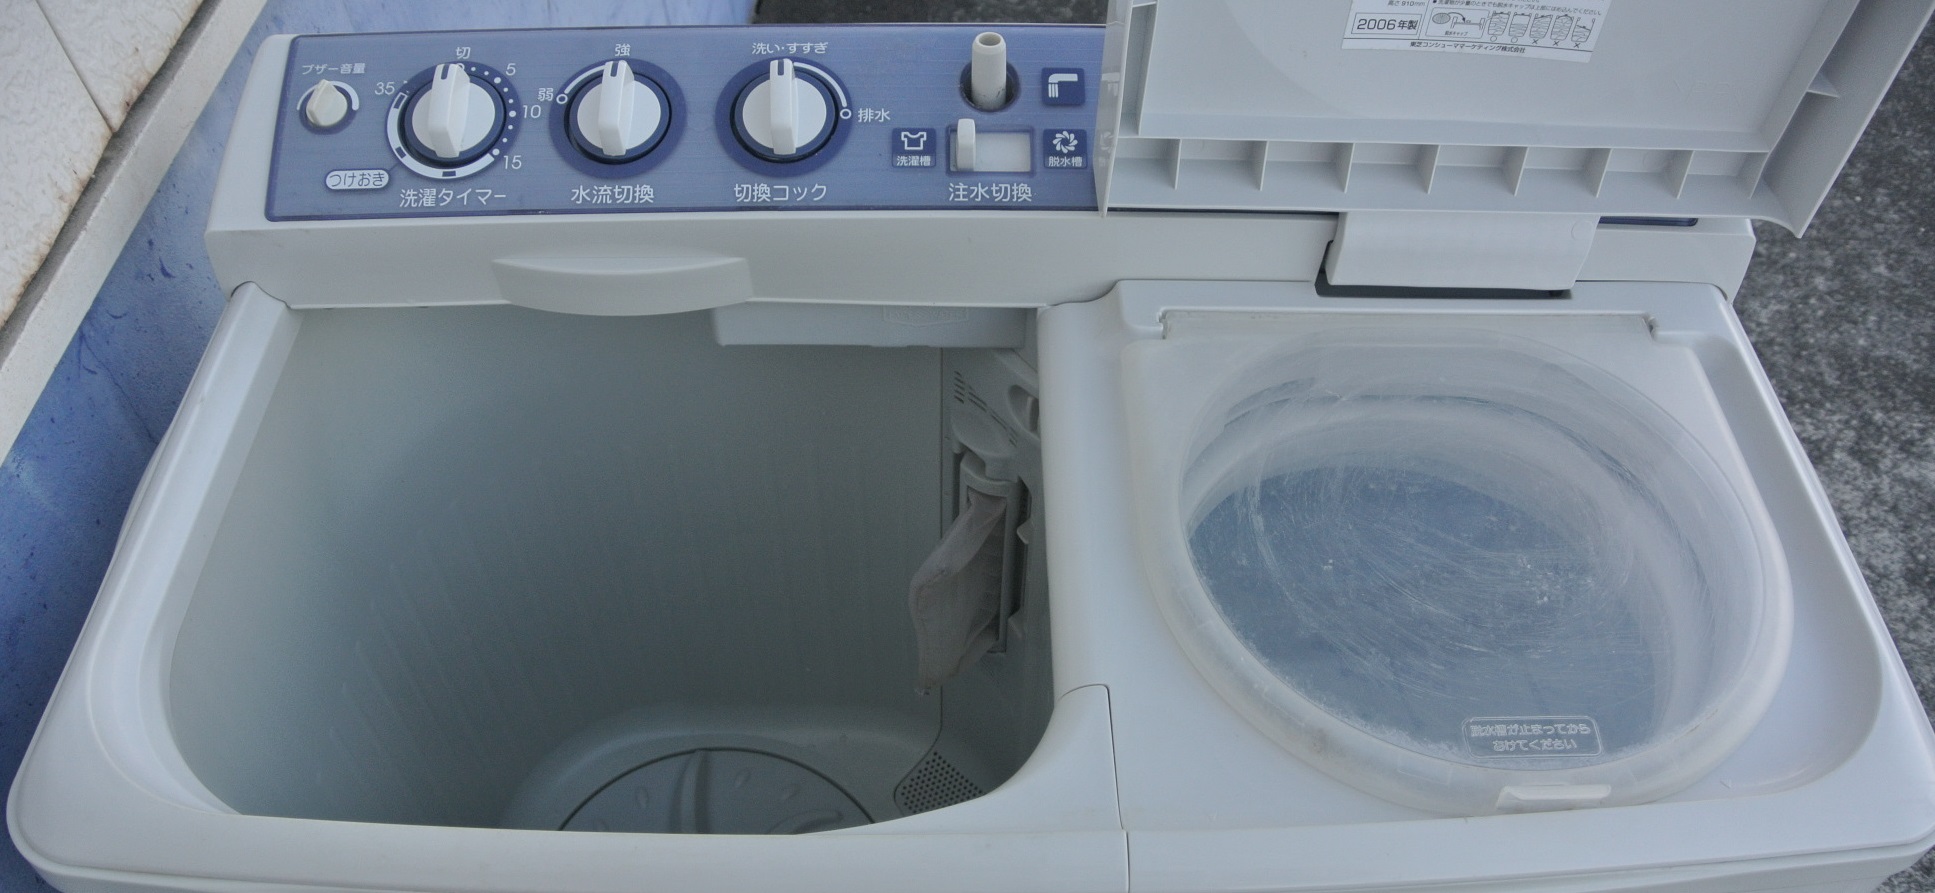 ☆東芝 2槽式洗濯機 TOSHIBA VH-52G 2008年製 洗濯容量5.2kg - 洗濯機